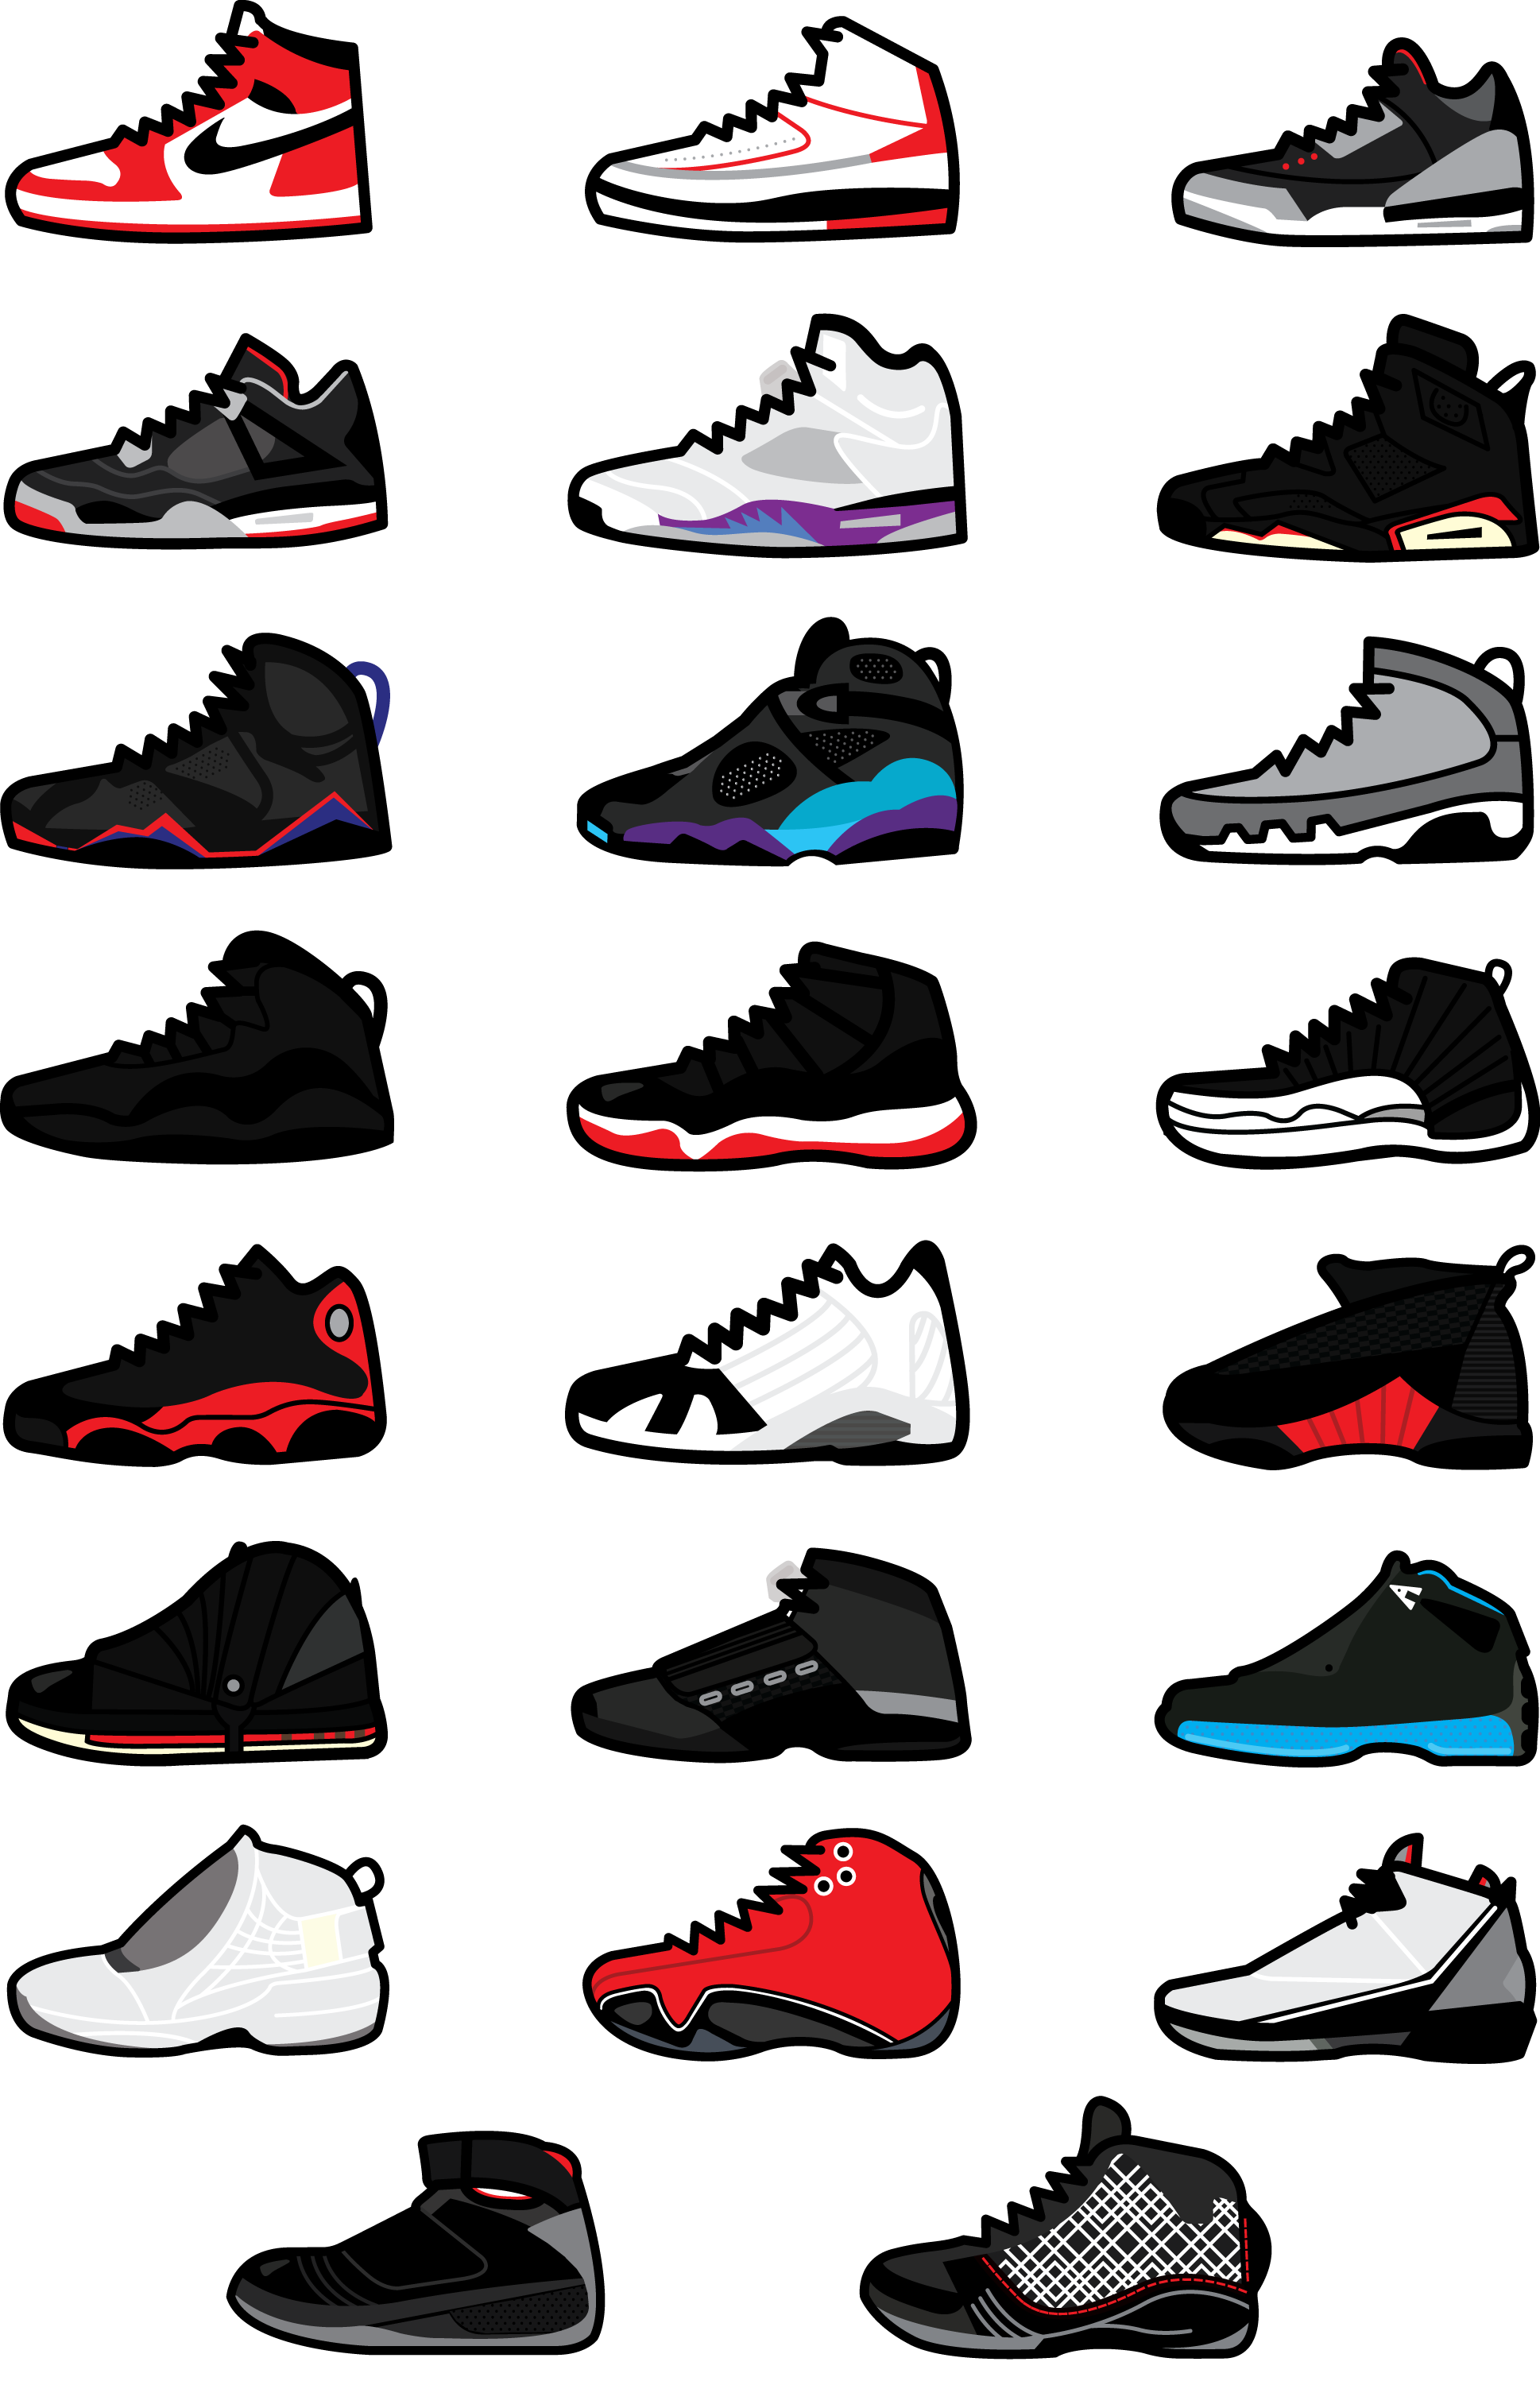 Sneakers wallpaper .com